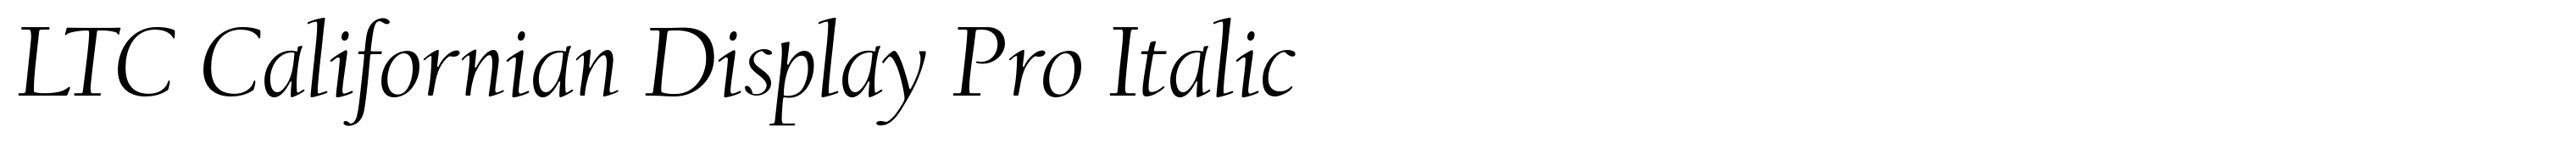 LTC Californian Display Pro Italic